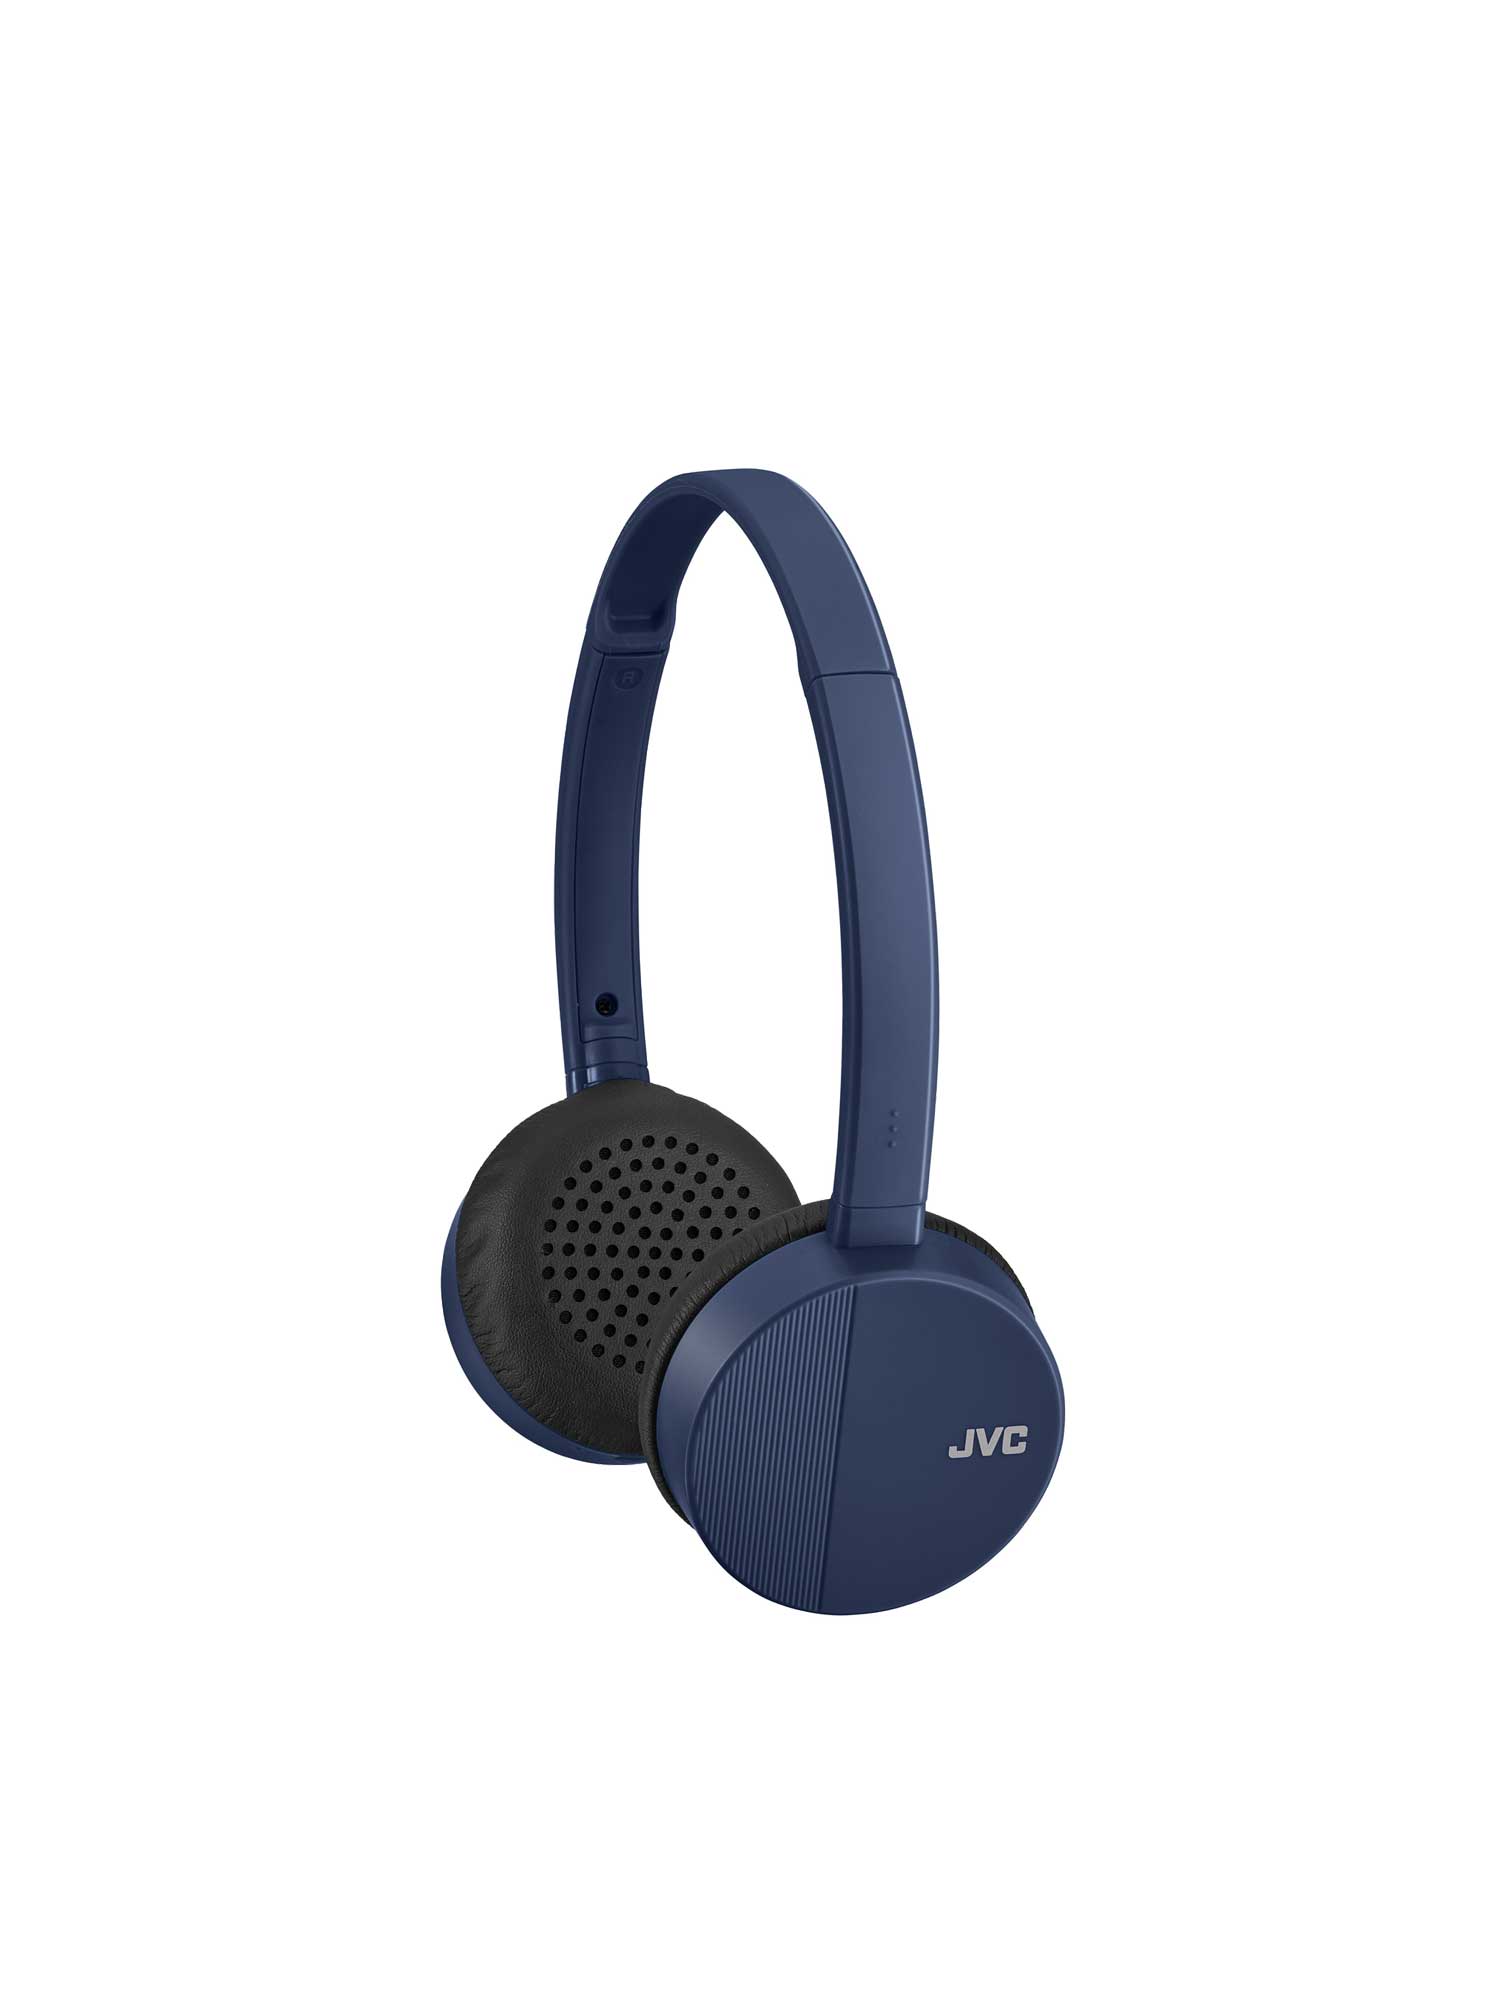 HA-S24W-A in blue on-ear wireless bluetooth headphones